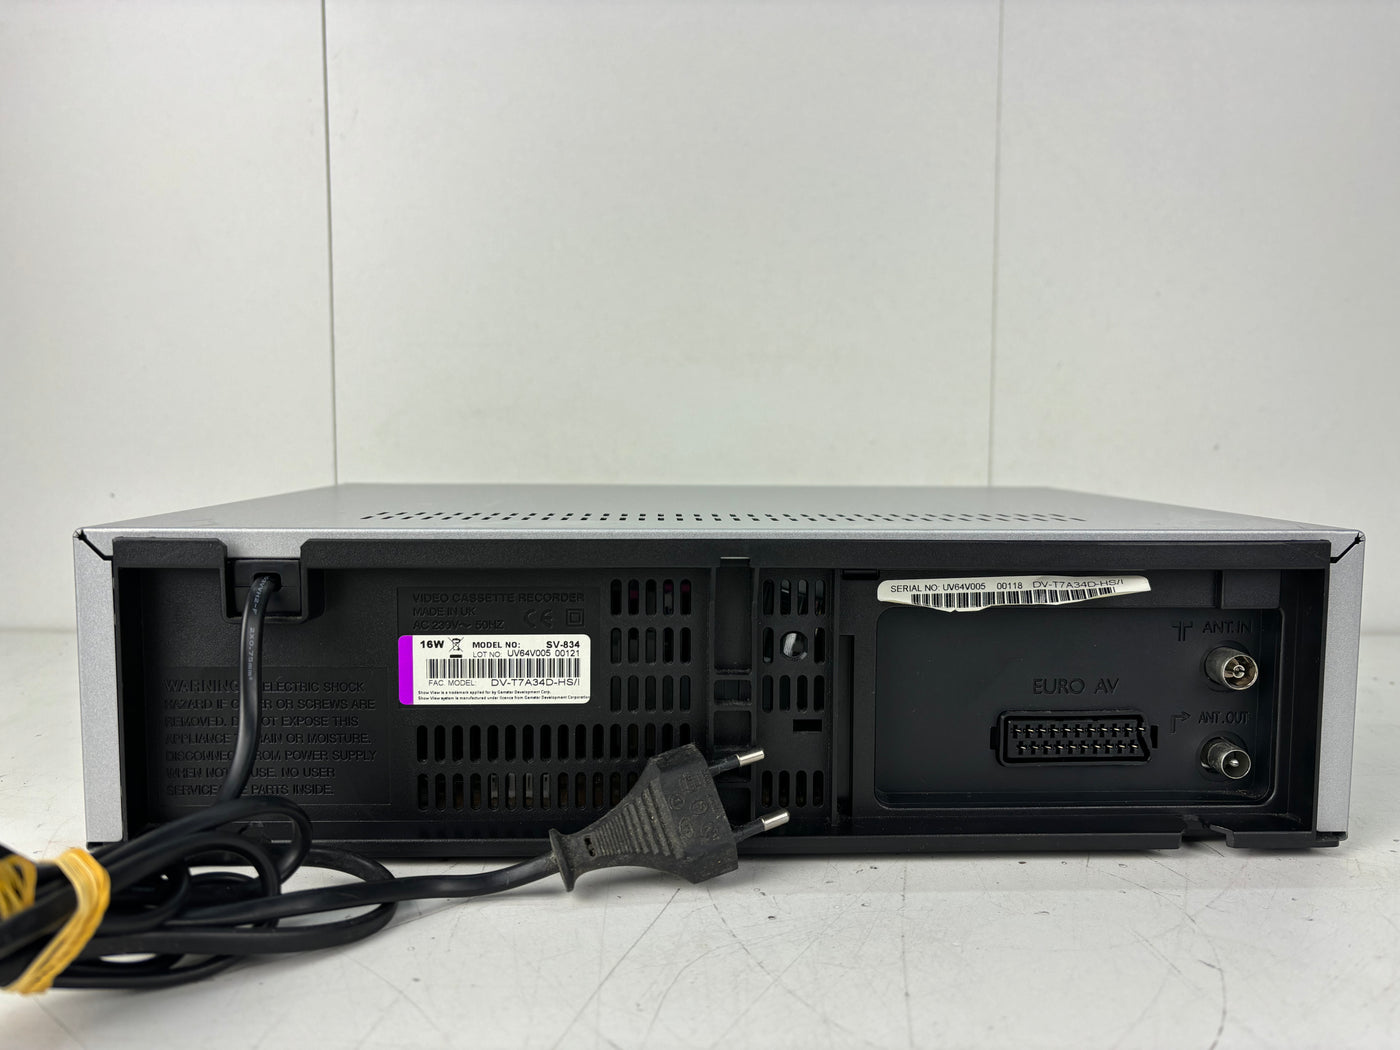 Daewoo SV-834 V500 VHS Video Cassette Recorder